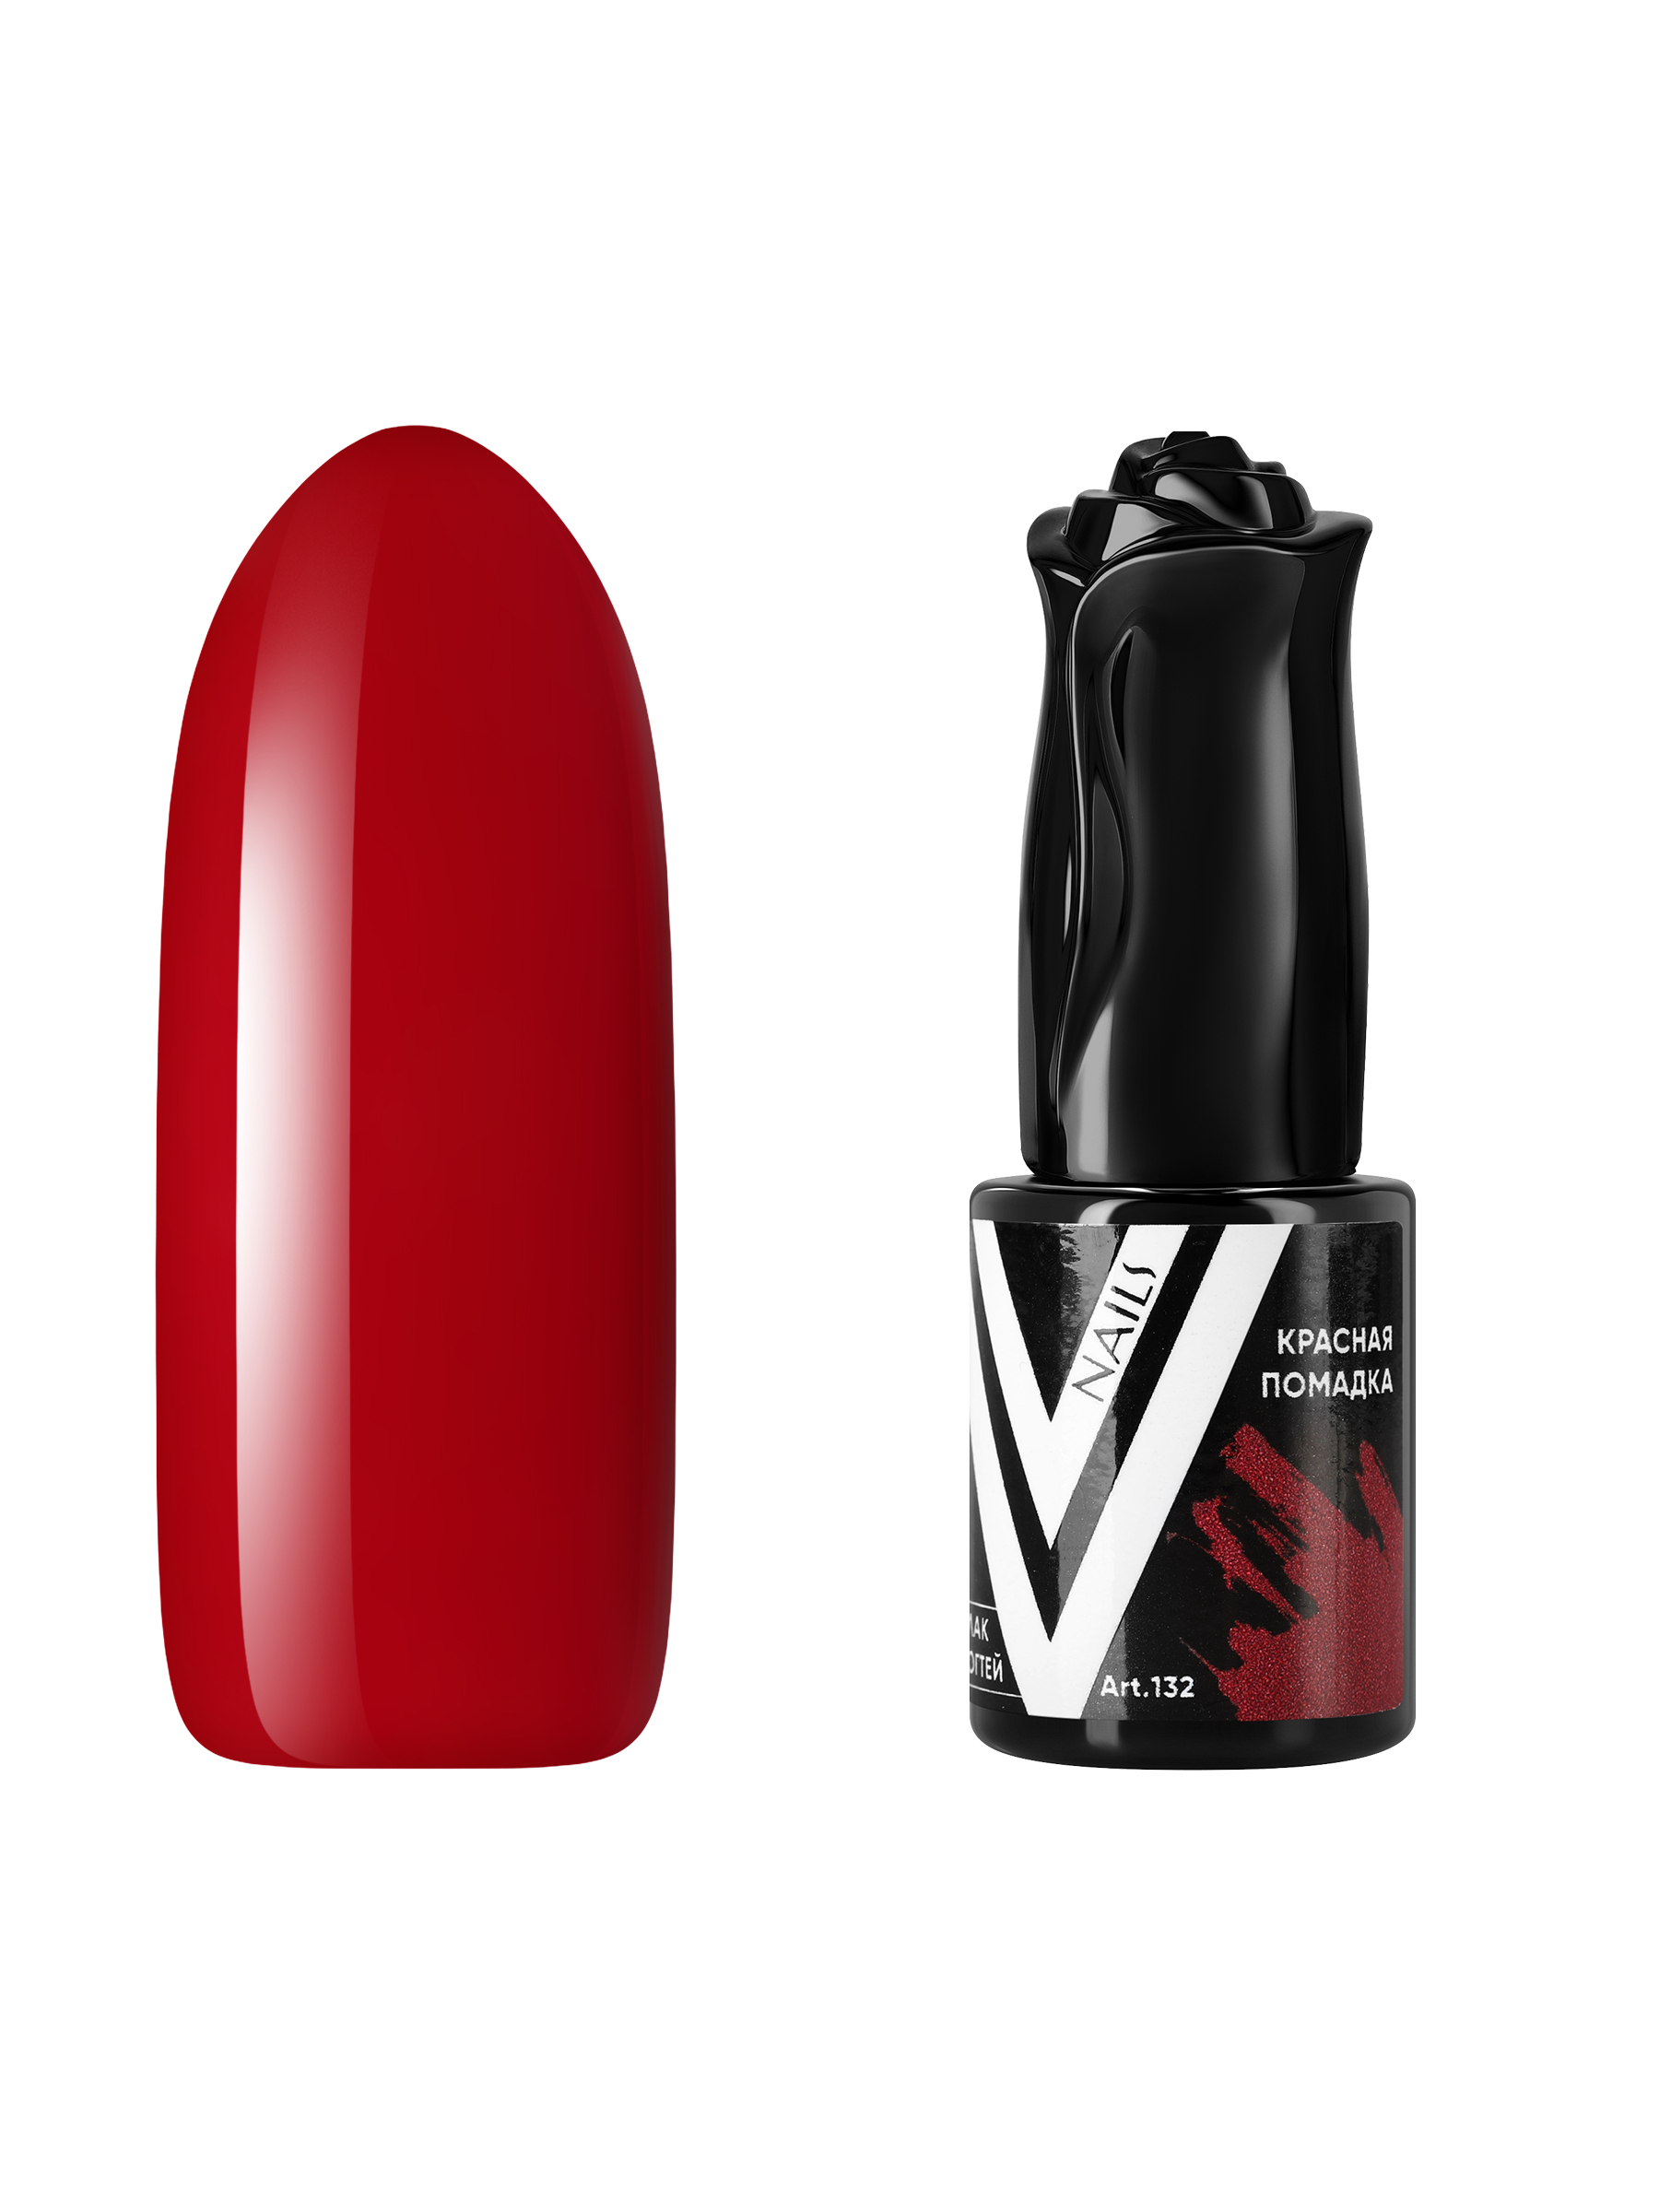 Гель-лак для ногтей Vogue Nails полупрозрачный самовыравнивающийся темный, красный, 10 мл сливочная помадка с арахисом красный октябрь 220 гр